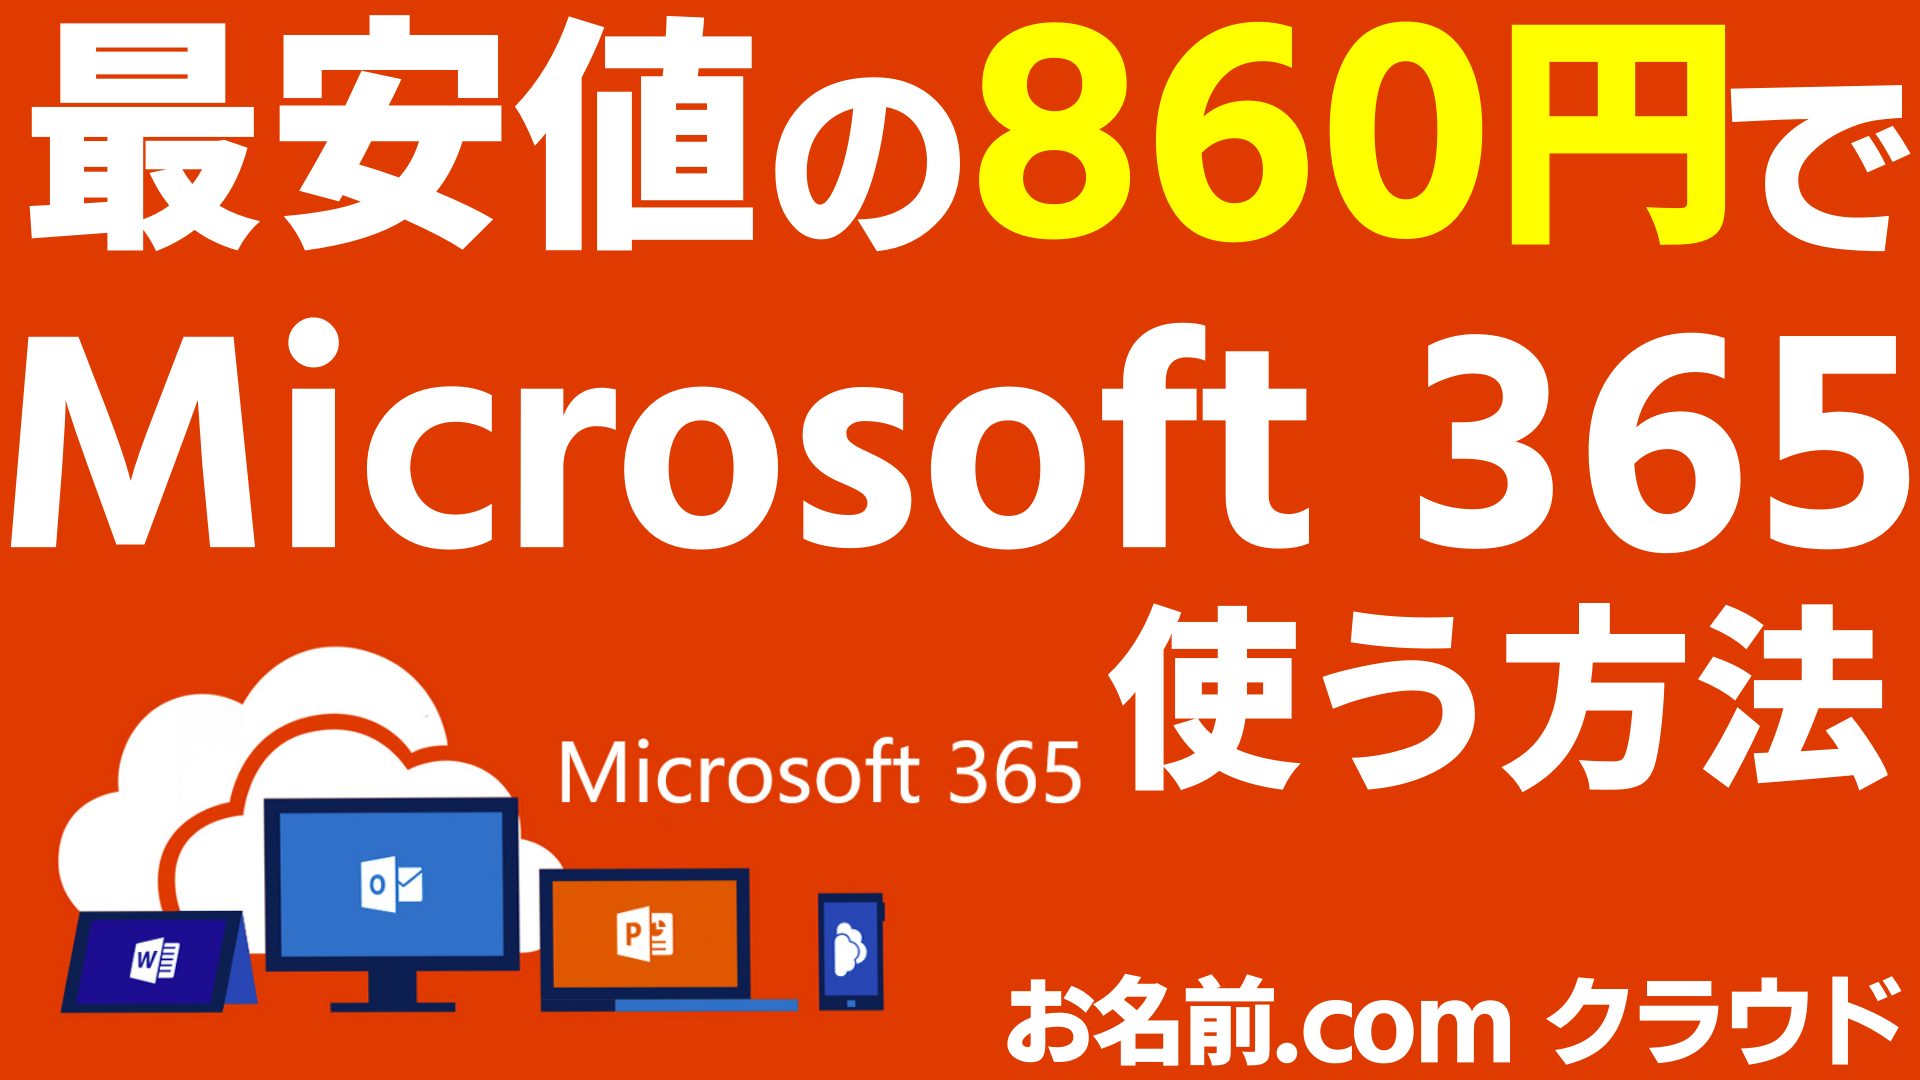 Microsoft 365 旧 Office 365 を最安月860円で使う方法 お名前 Com Officeクラウド なりかくんのブログ